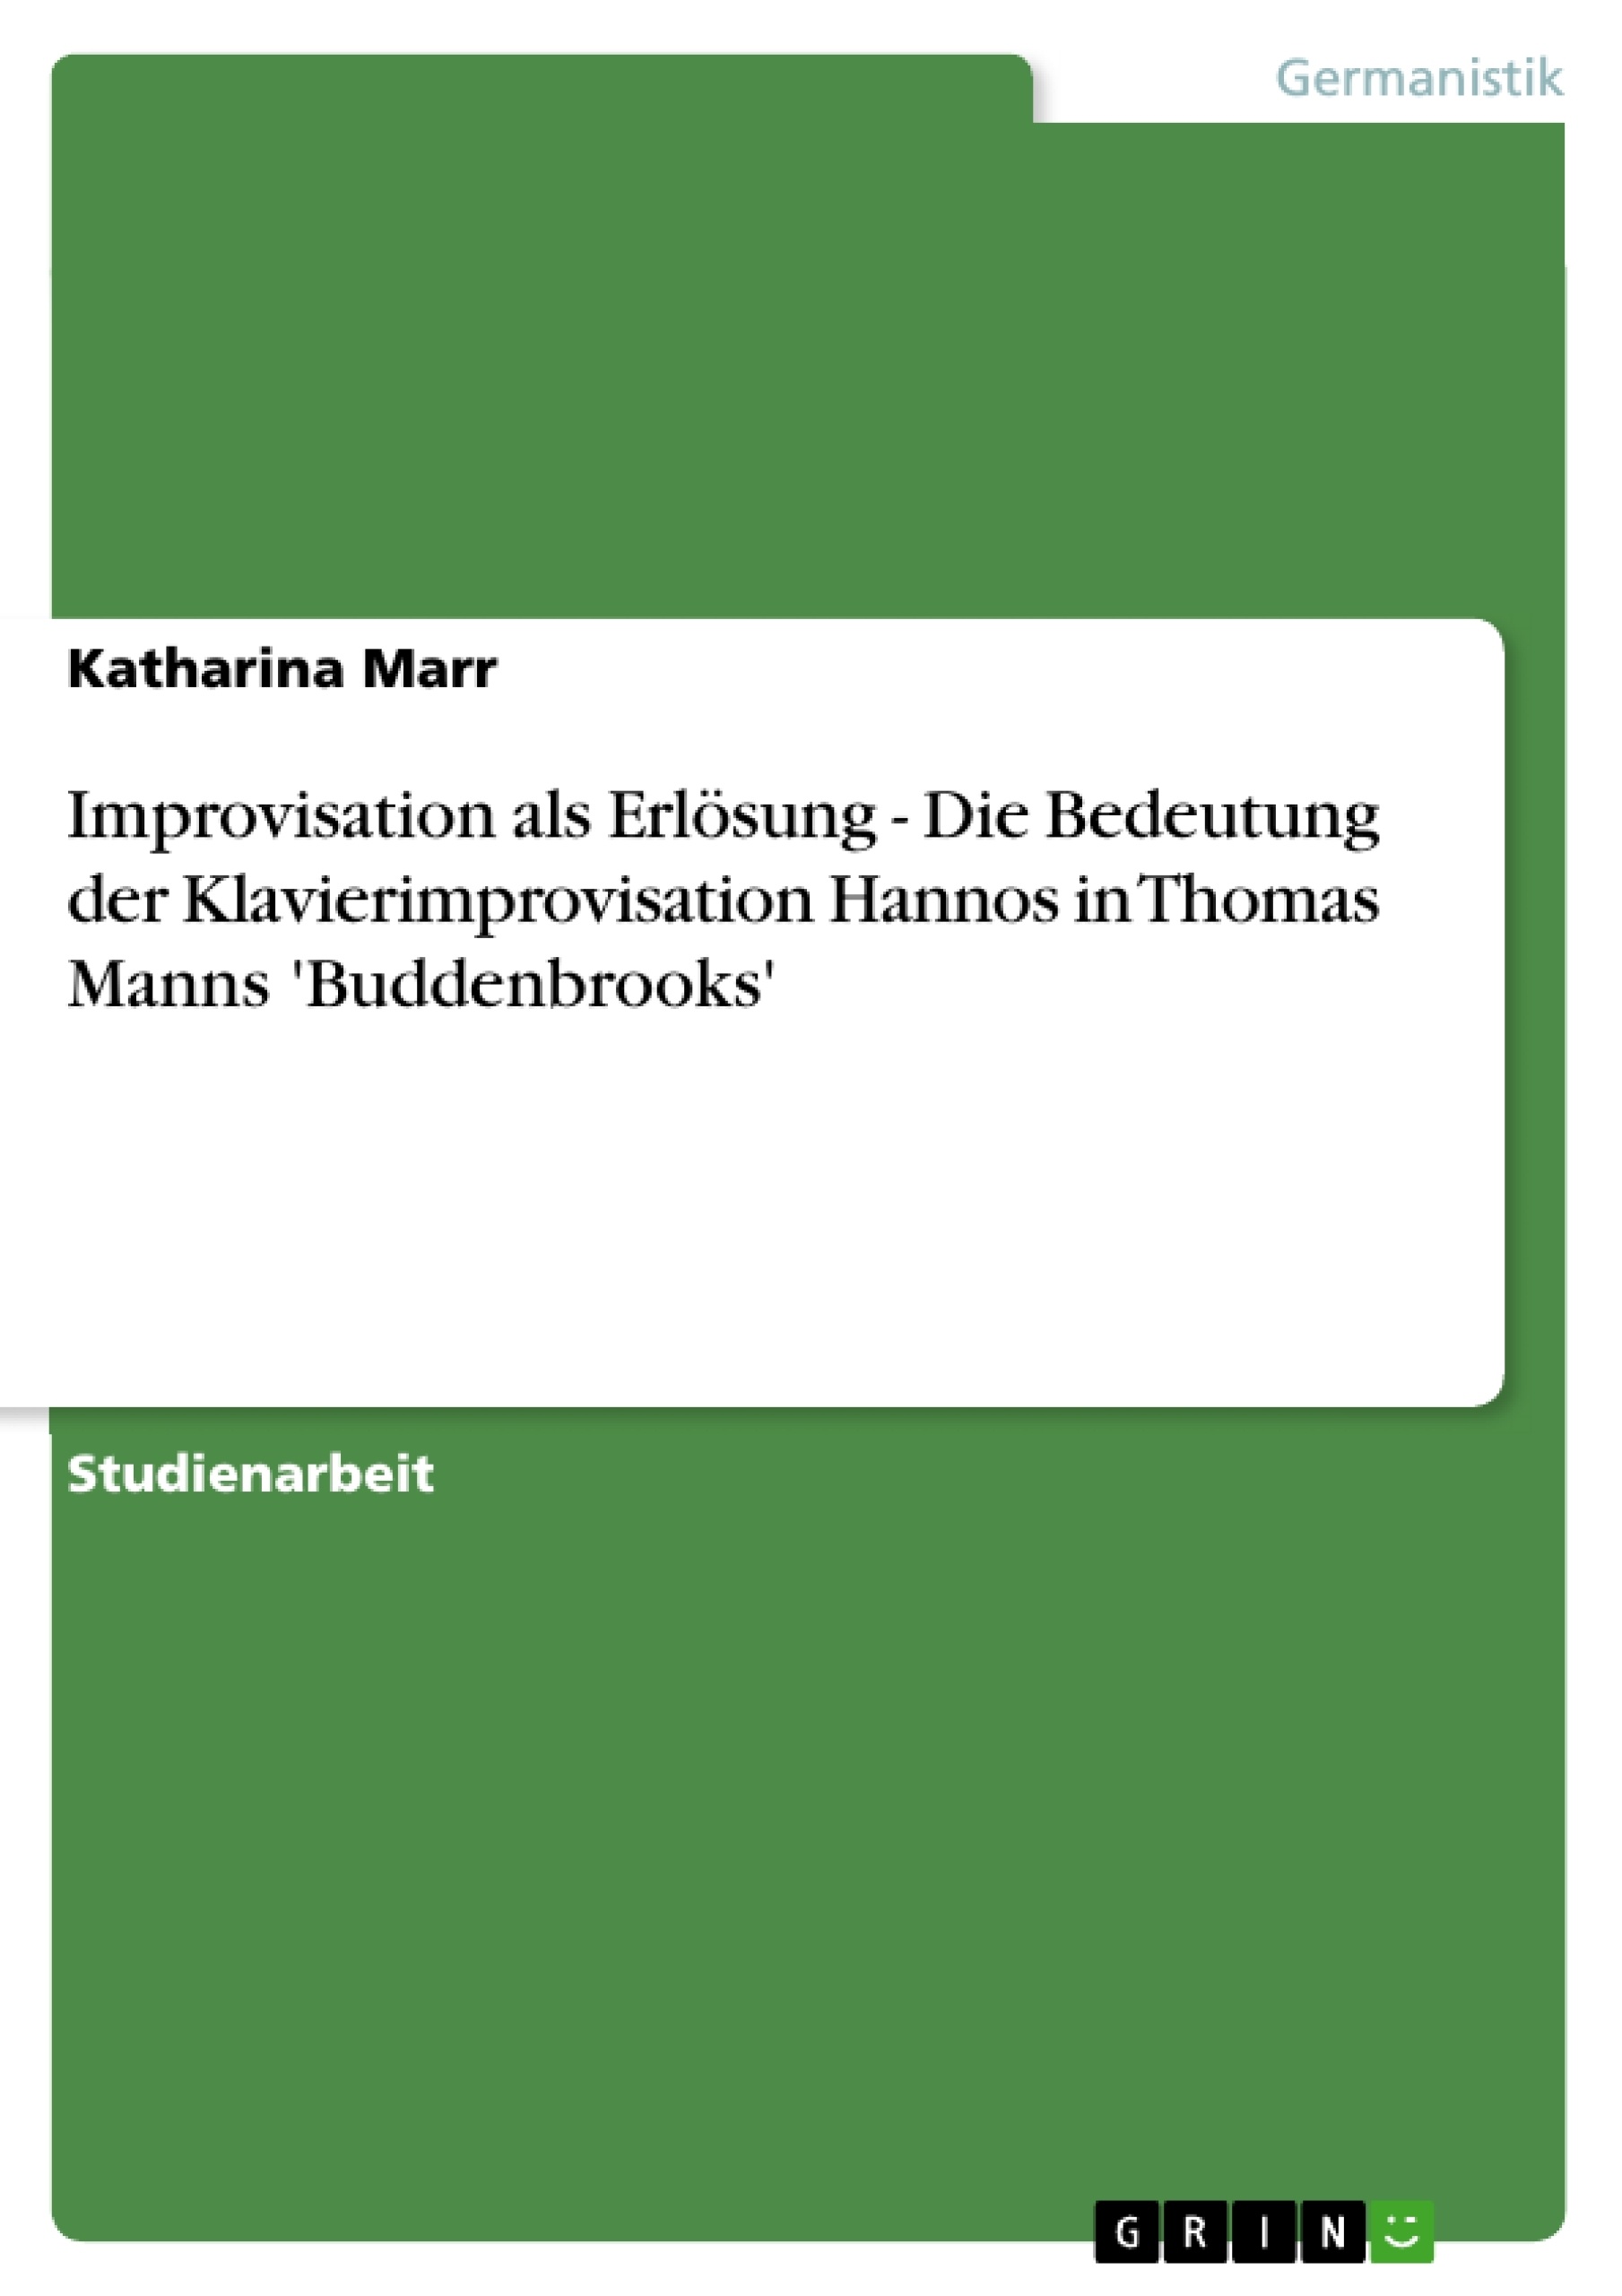 Título: Improvisation als Erlösung - Die Bedeutung der Klavierimprovisation Hannos in Thomas Manns 'Buddenbrooks'